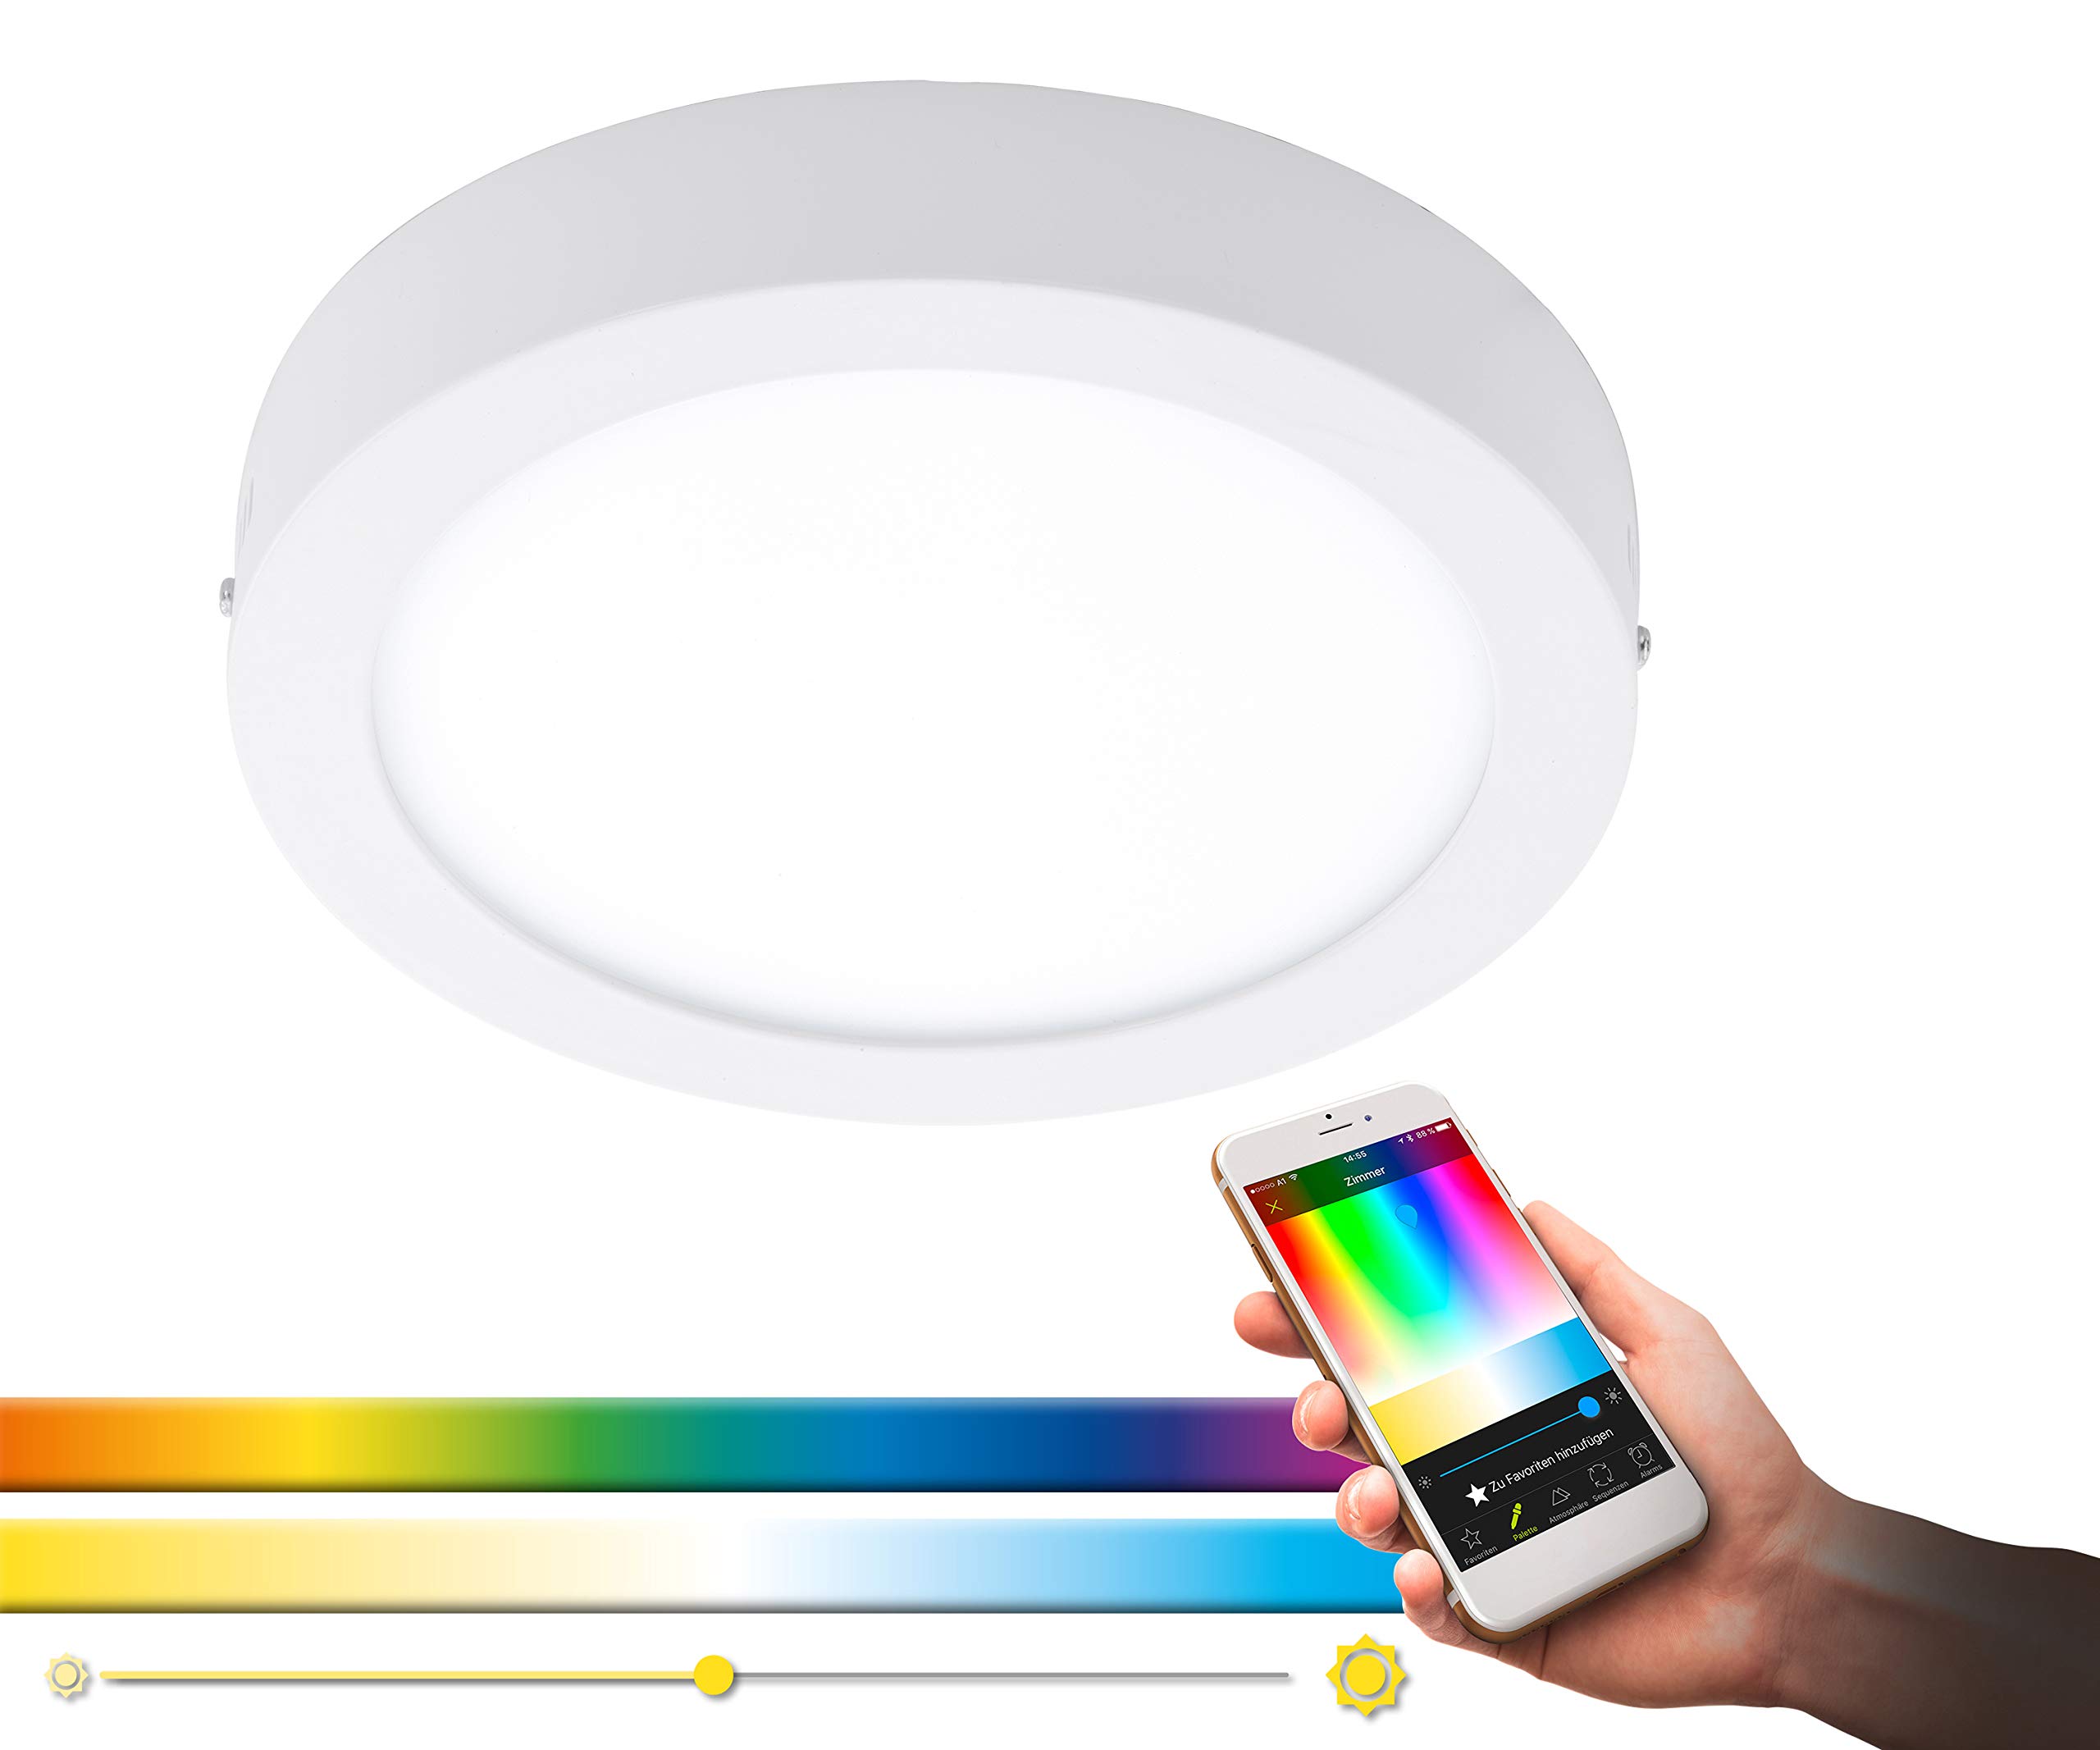 EGLO connect LED Deckenleuchte Fueva-C, Smart Home Deckenlampe, Material: Metallguss, Kunststoff, Farbe: Weiß, Ø: 22,5 cm, dimmbar, Weißtöne und Farben einstellbar